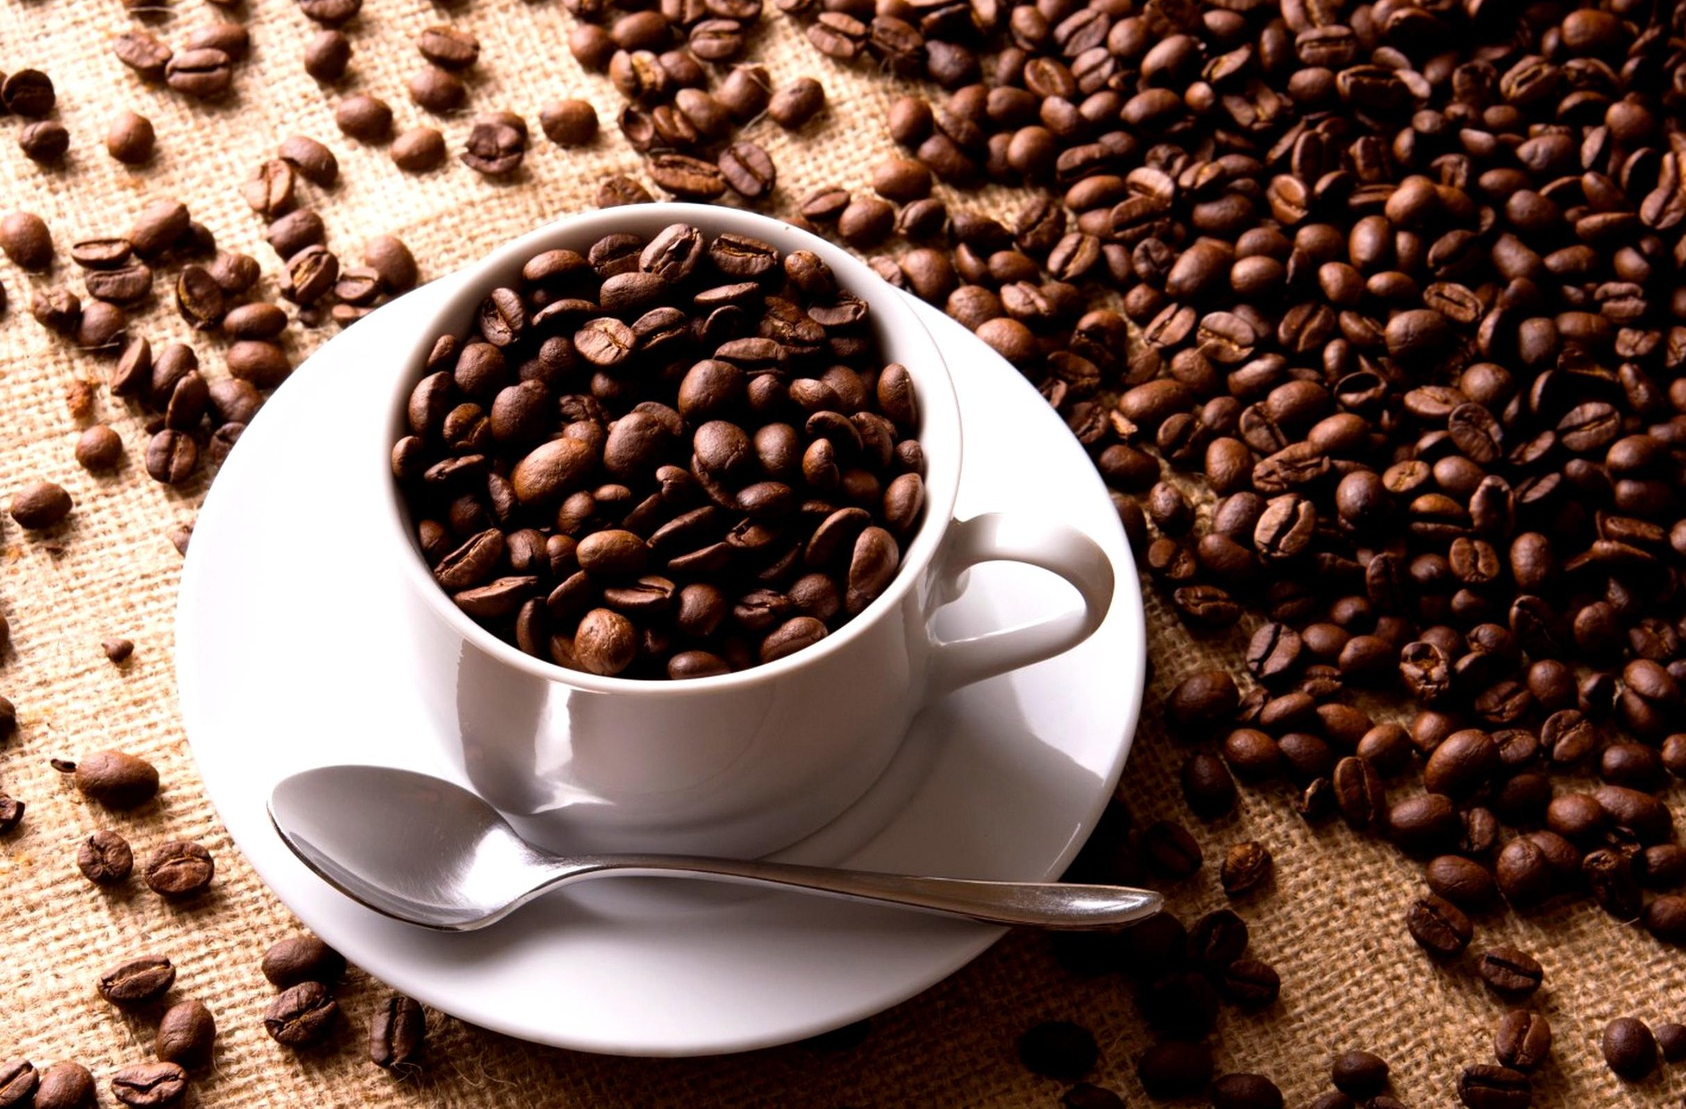 Giá nông sản hôm nay dự báo giá cà phê còn nhiều biến động do thiếu hụt nguonf cung và các chính sách về điều chỉnh lãi suất tiền tệ.